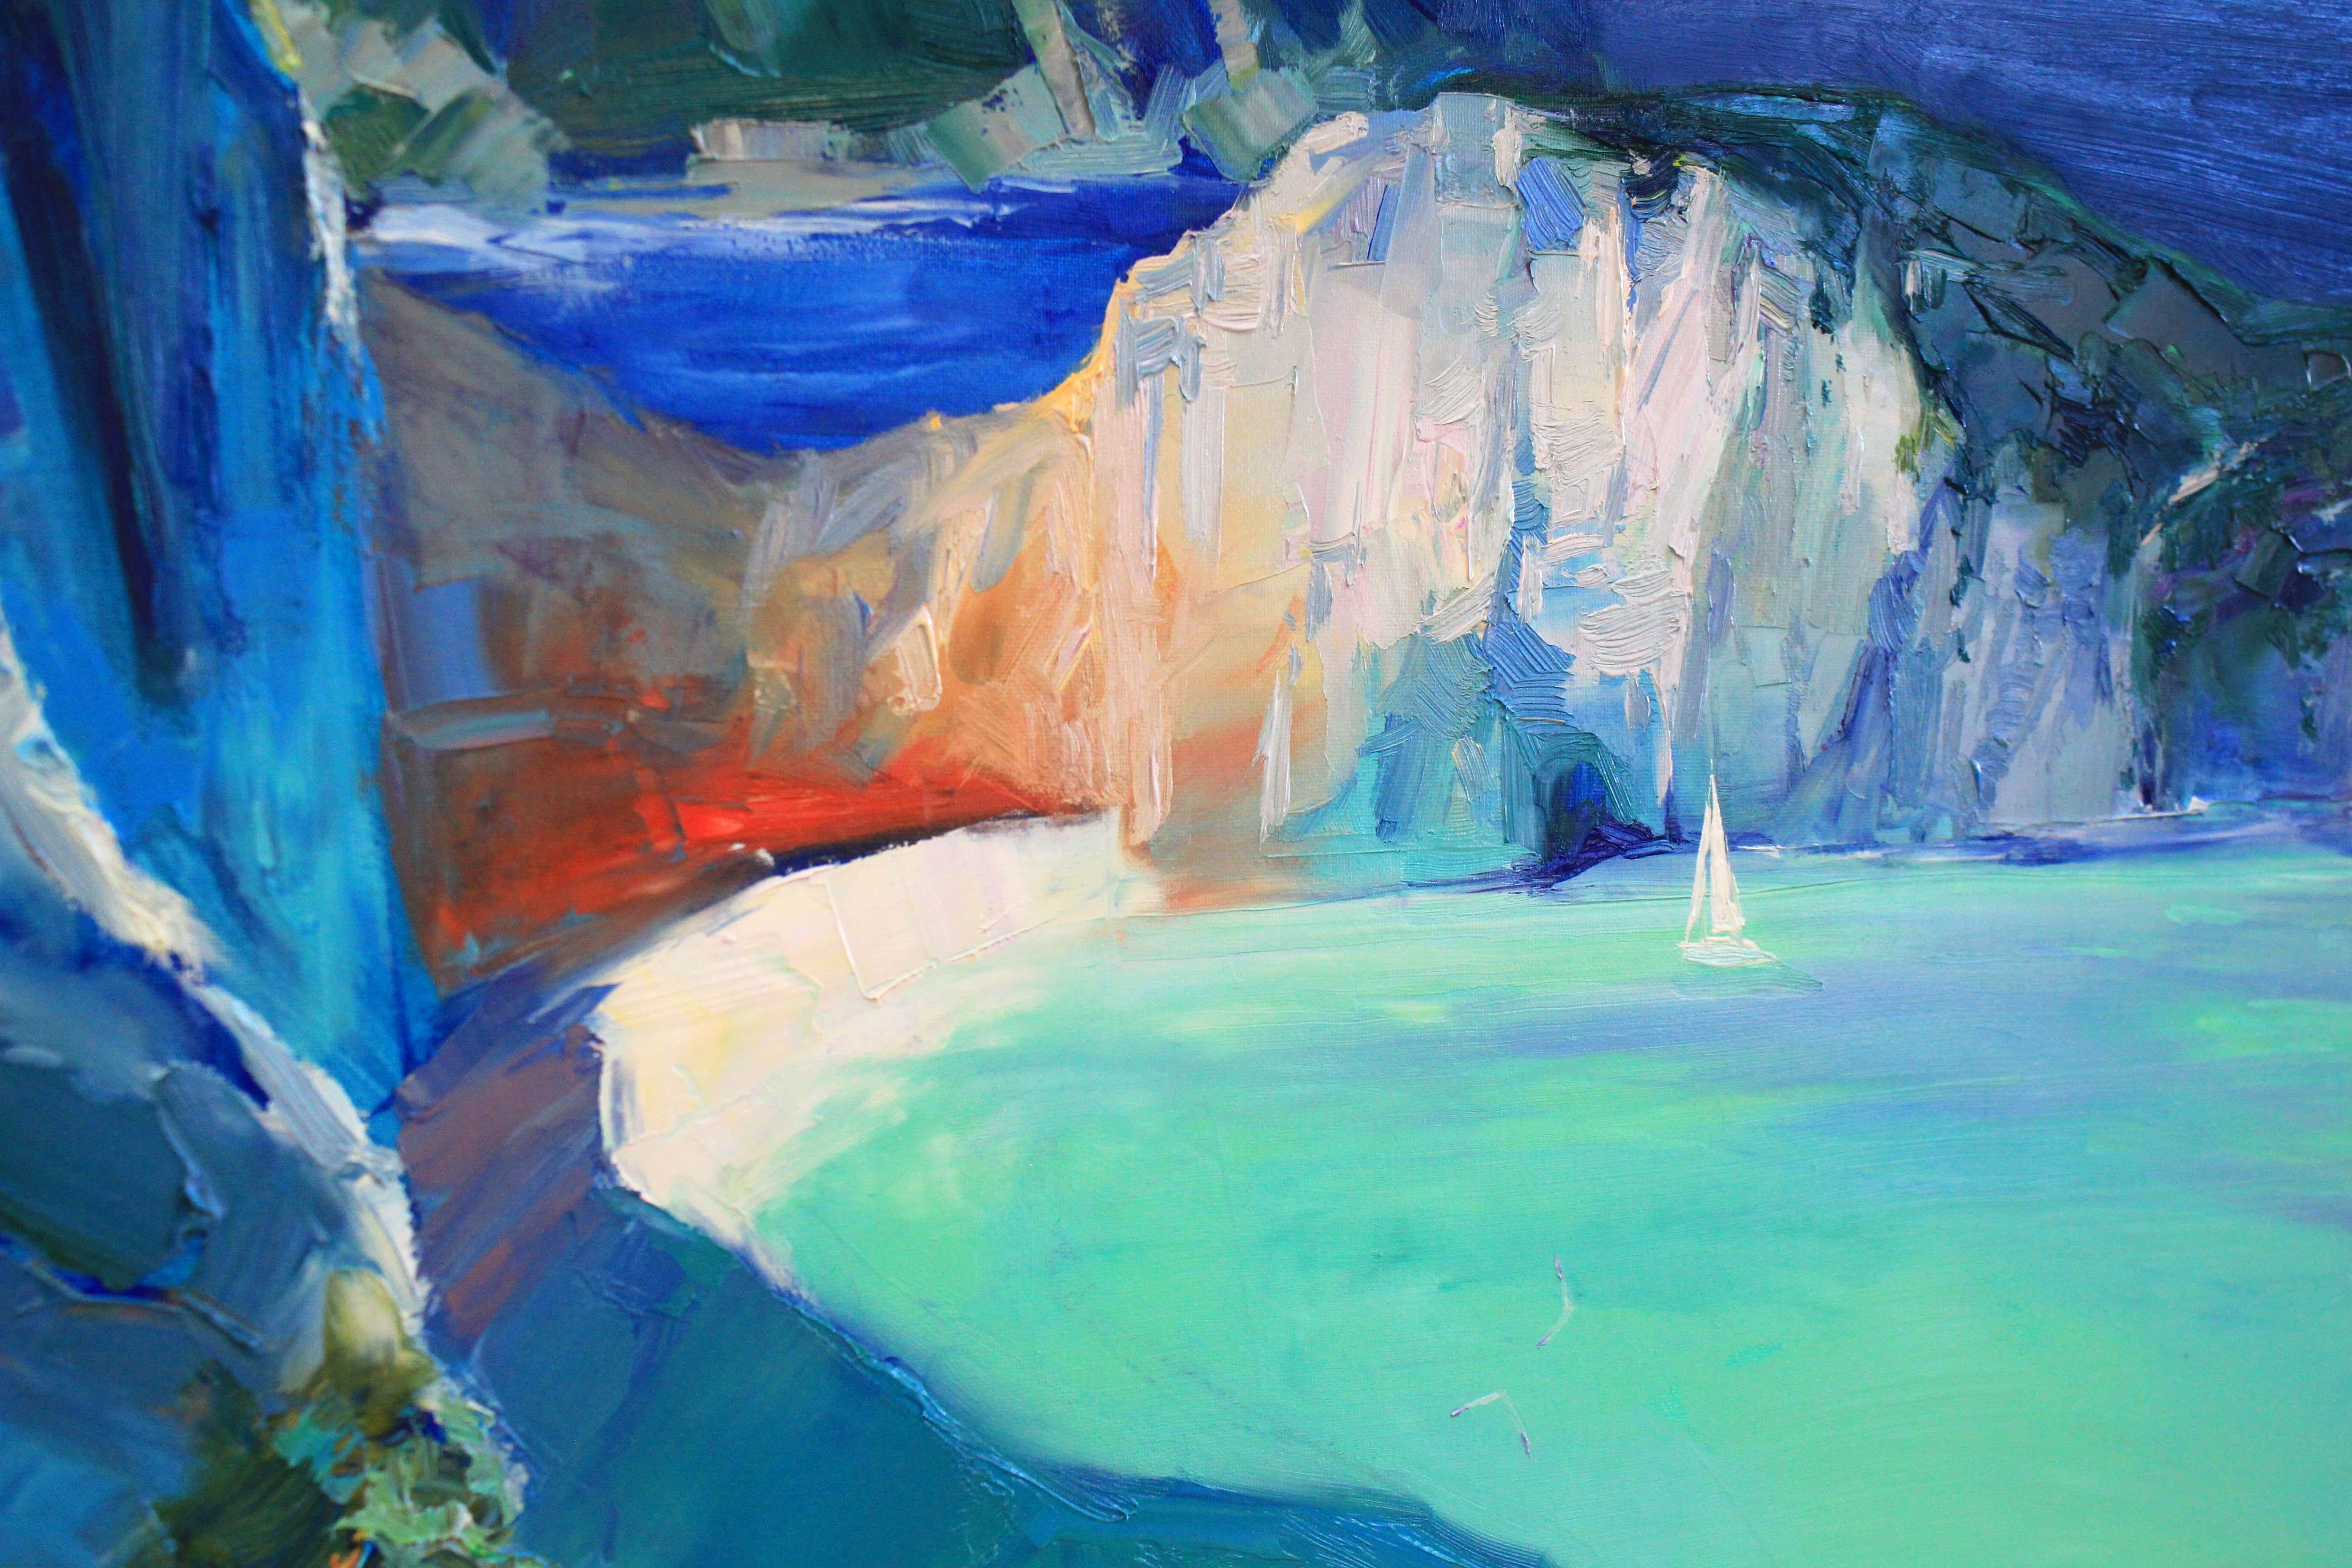 Cette peinture marine originale capture l'essence de la plage de Navagio en Grèce, une destination étonnante connue pour sa côte rocheuse pittoresque et ses eaux bleues cristallines. J'incorpore différentes nuances de bleu pour représenter la mer